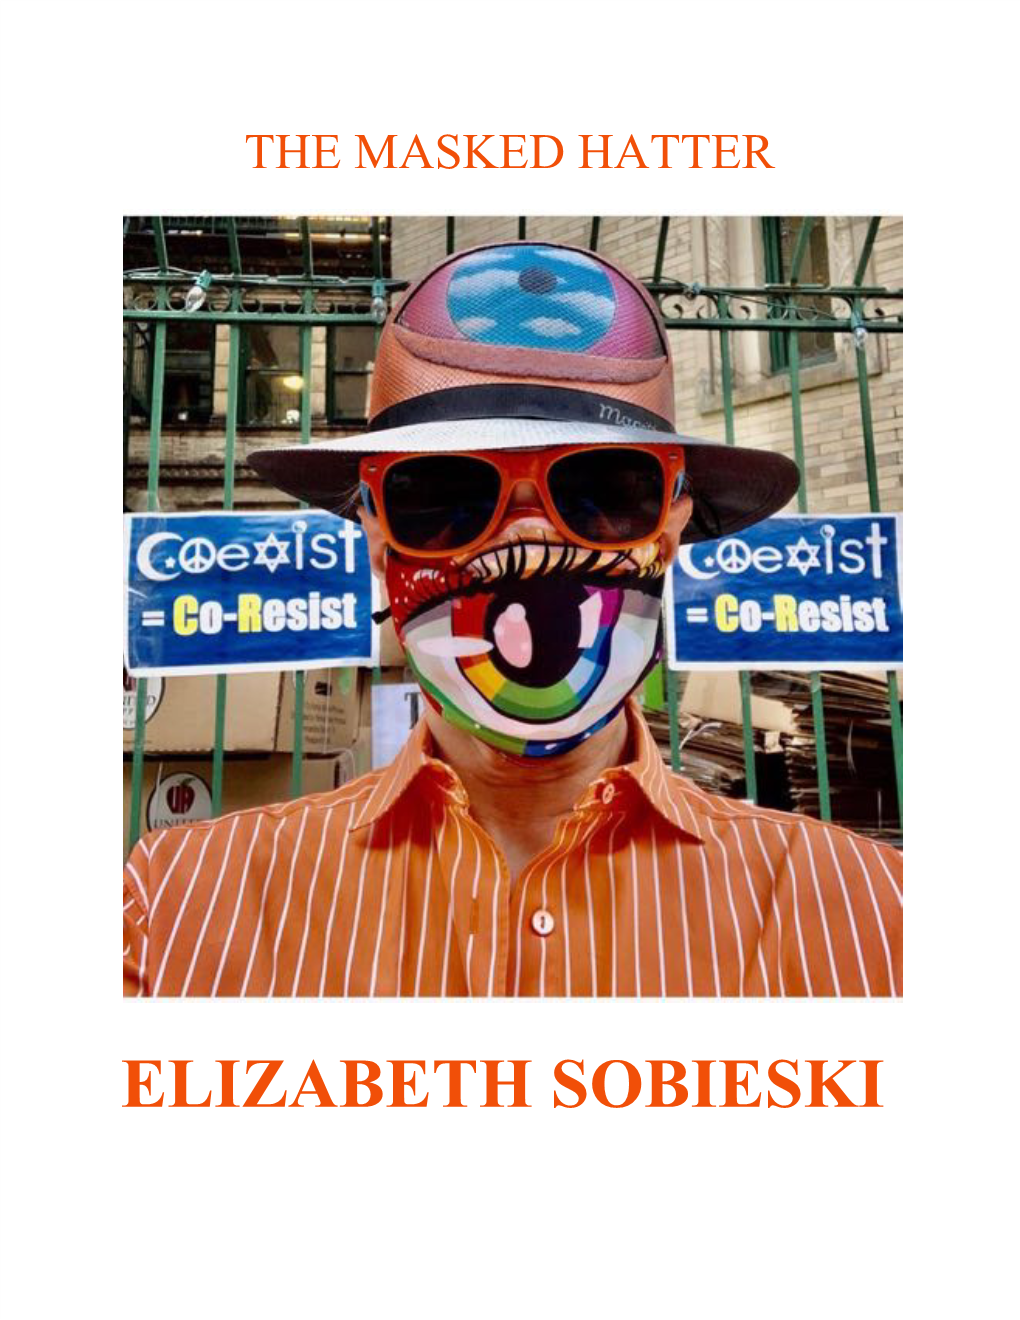 Elizabeth Sobieski